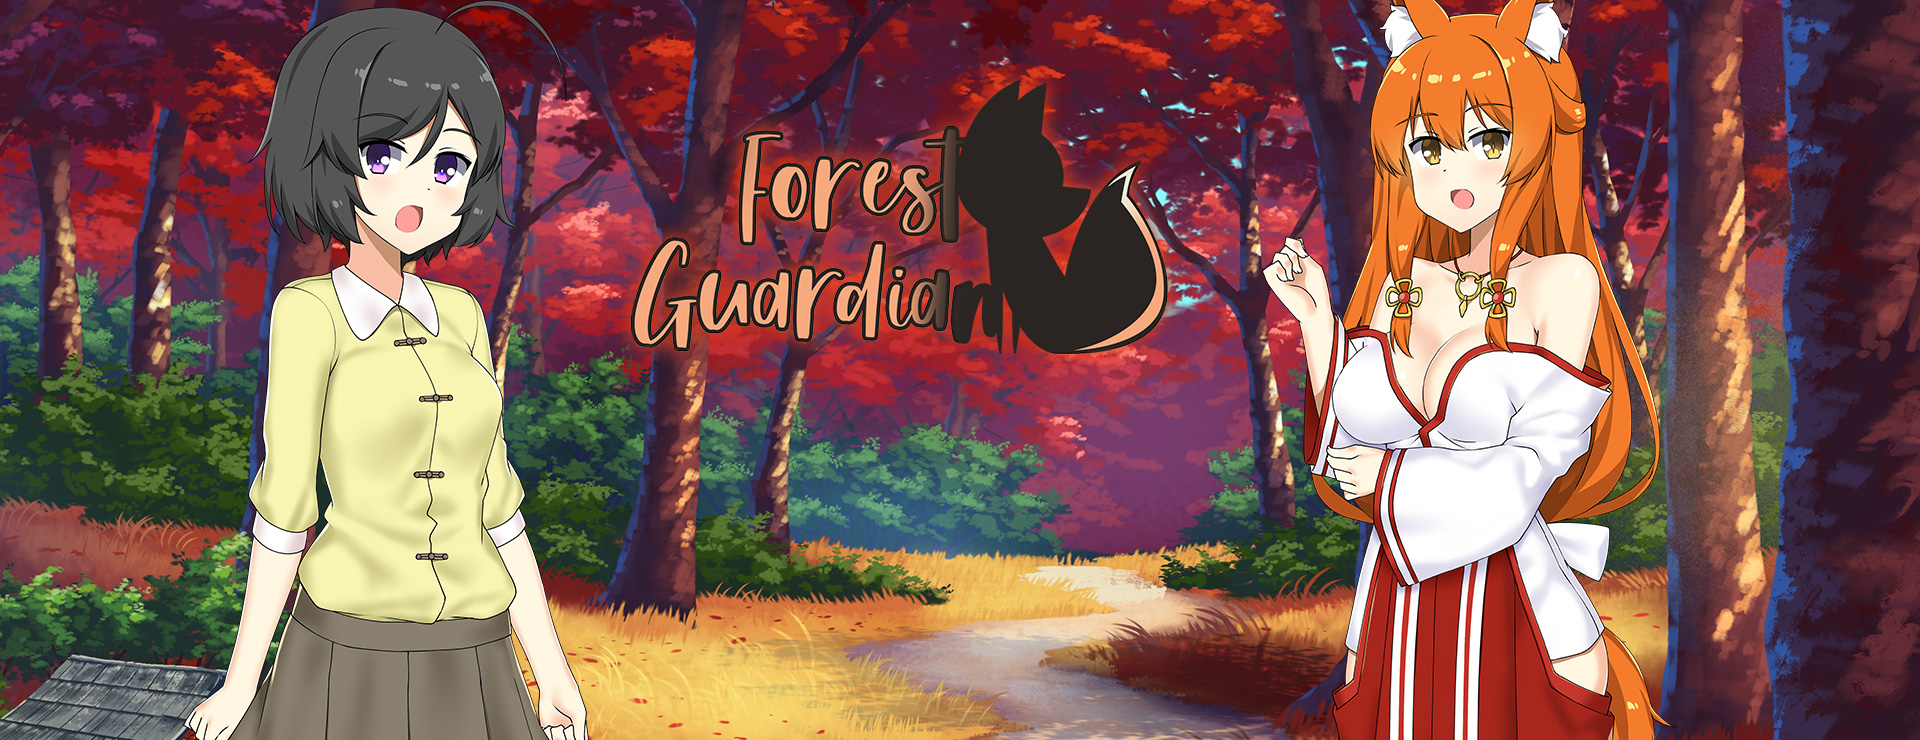 Forest Guardian - Japanisches Adventure Spiel